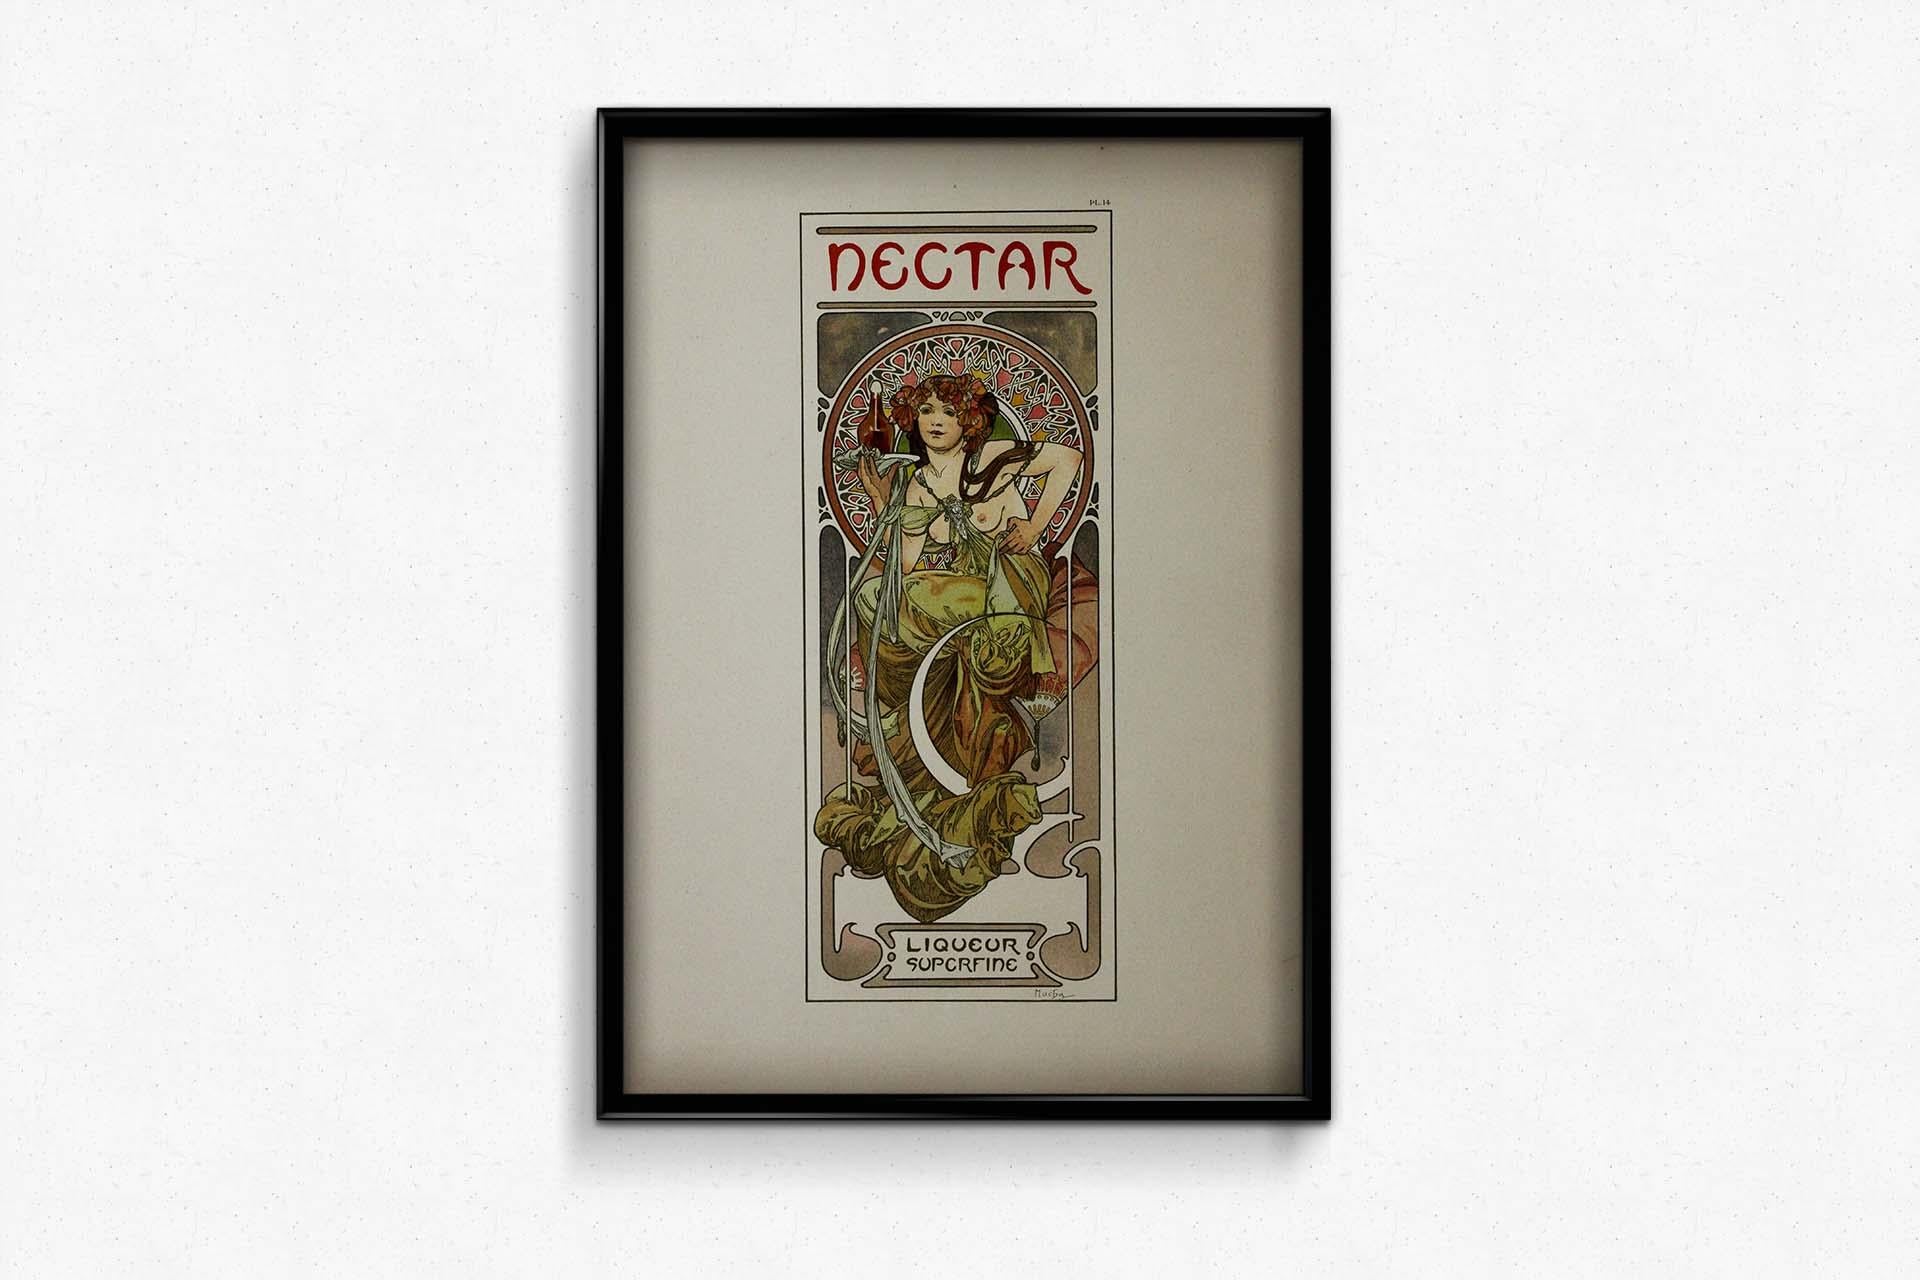 Alphonse Mucha's 1902 Documents décoratifs - Pl 14 Nectar liqueur superfine For Sale 1